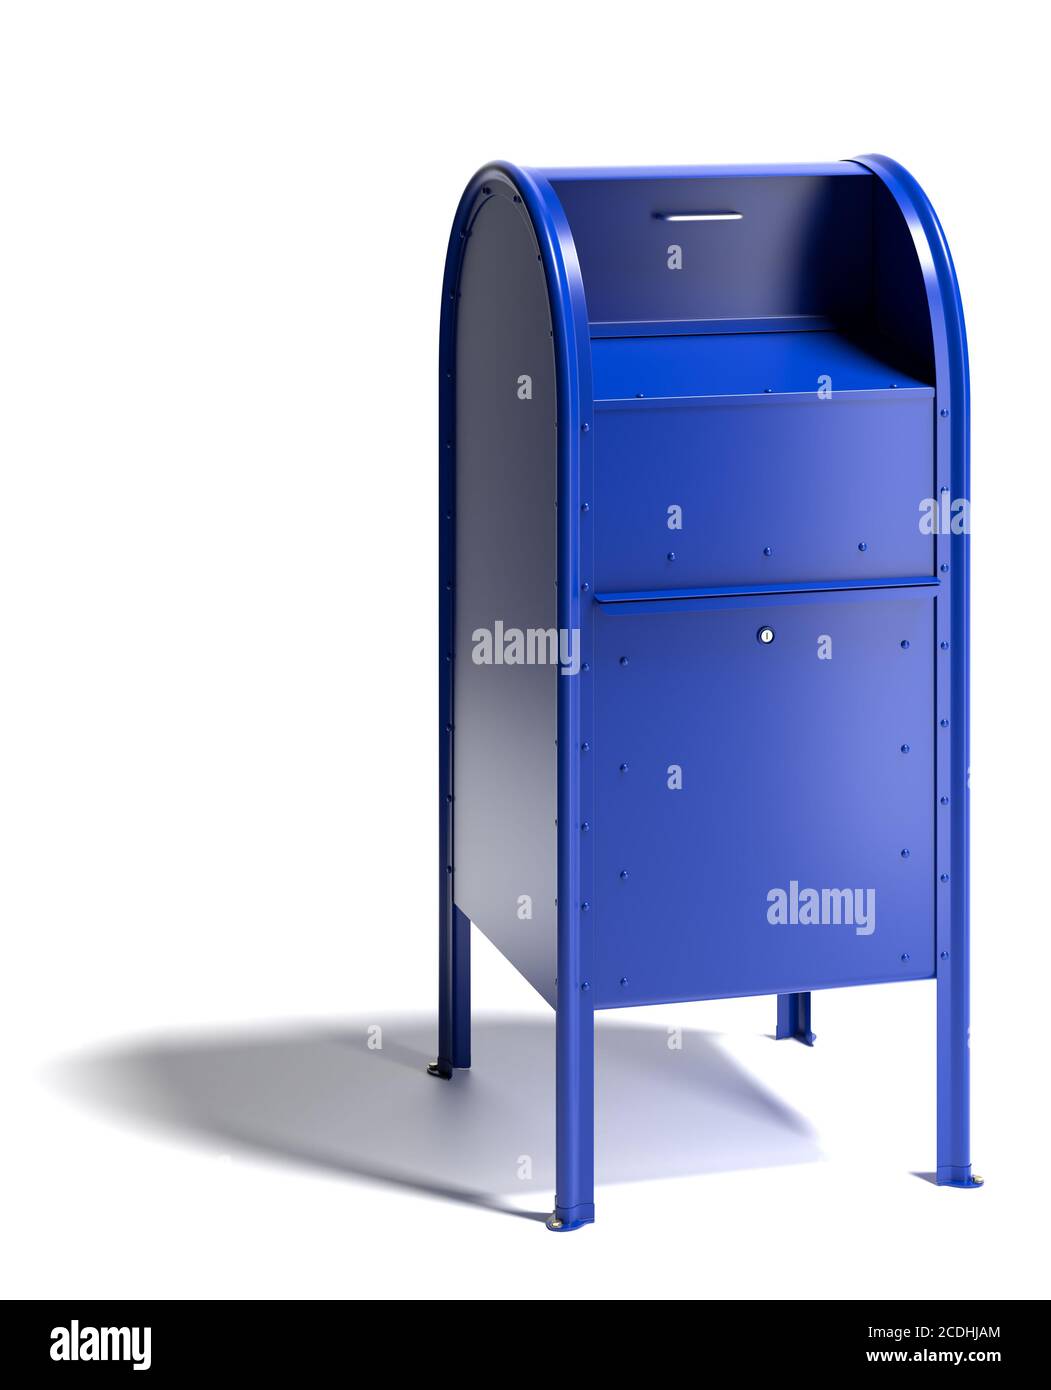 Boîte aux lettres bleue vierge dans le style des services postaux des  États-Unis. Isolé sur blanc avec ombre Photo Stock - Alamy